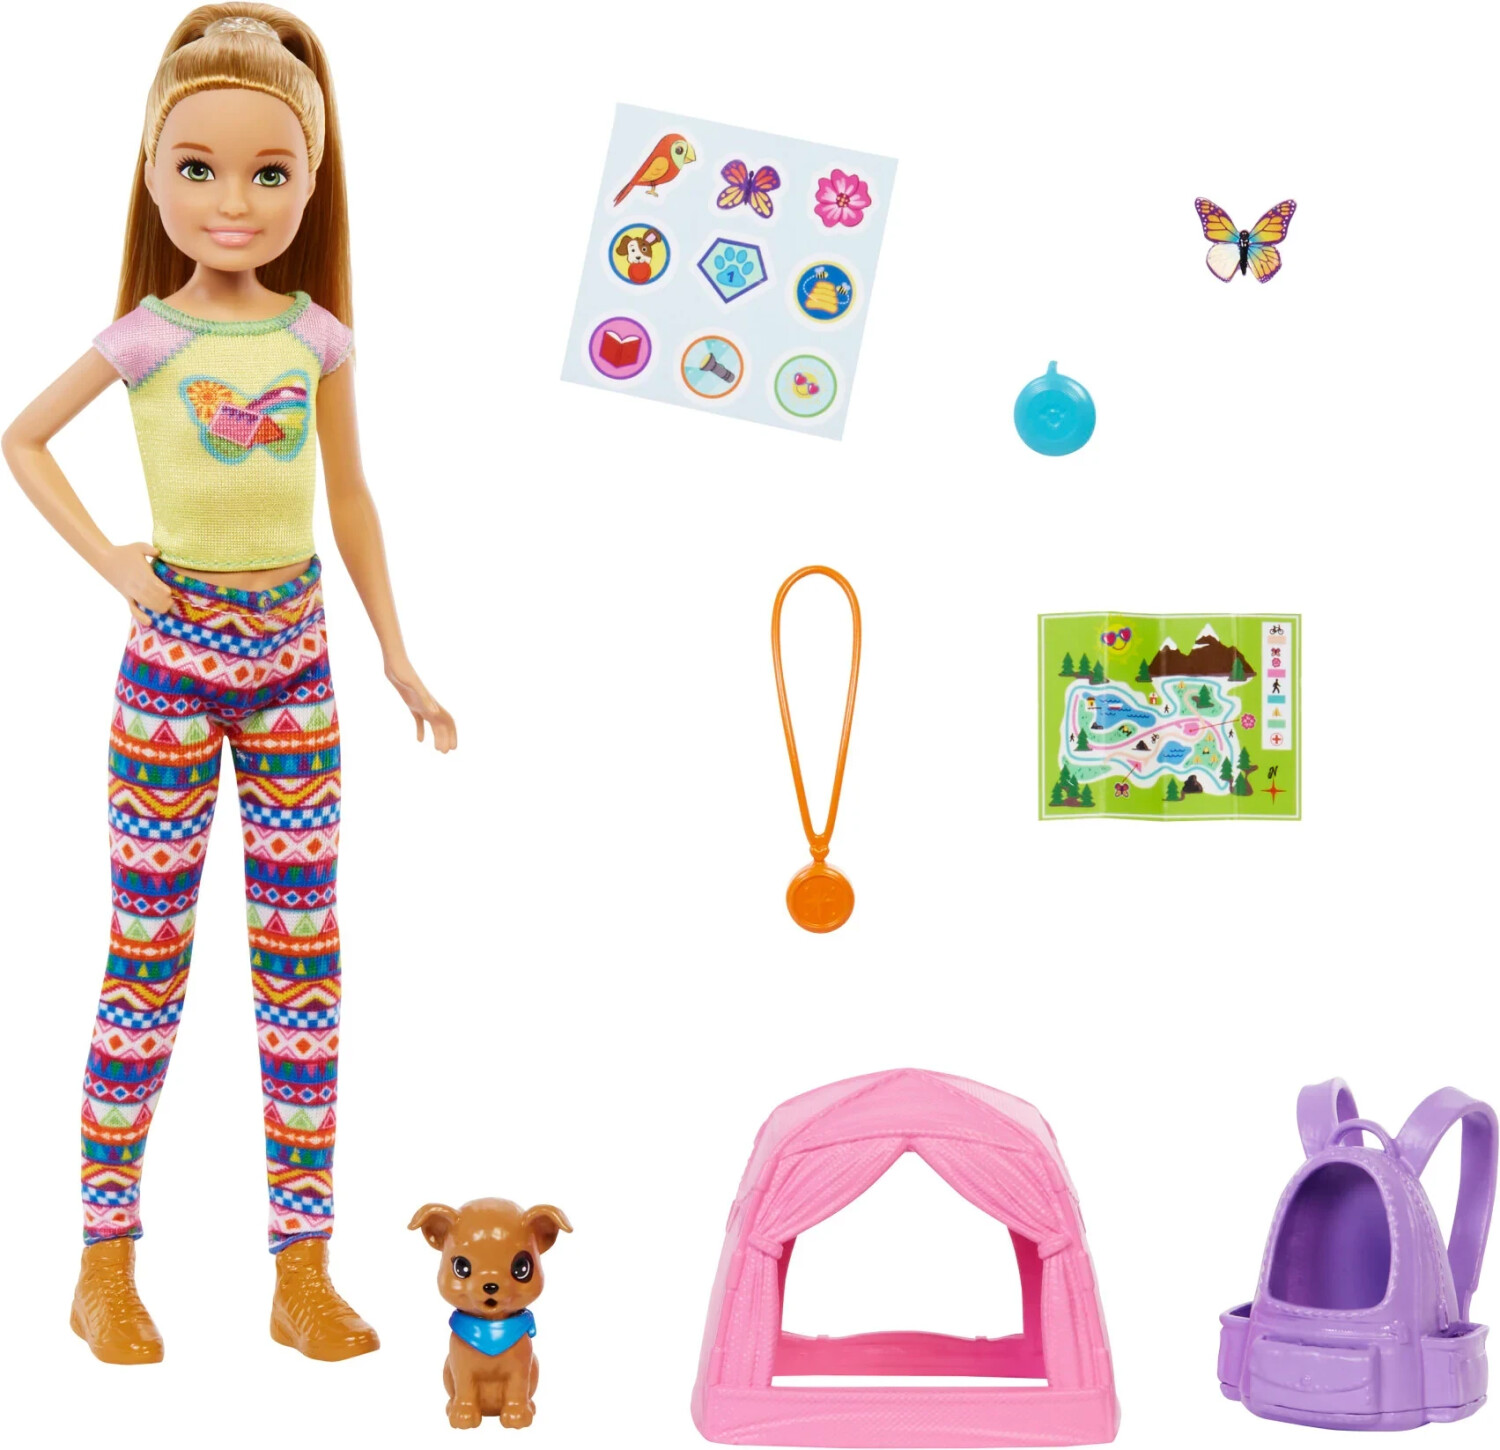 Livre: Barbie - Vie quotidienne 09 - Camping en famille, Mattel